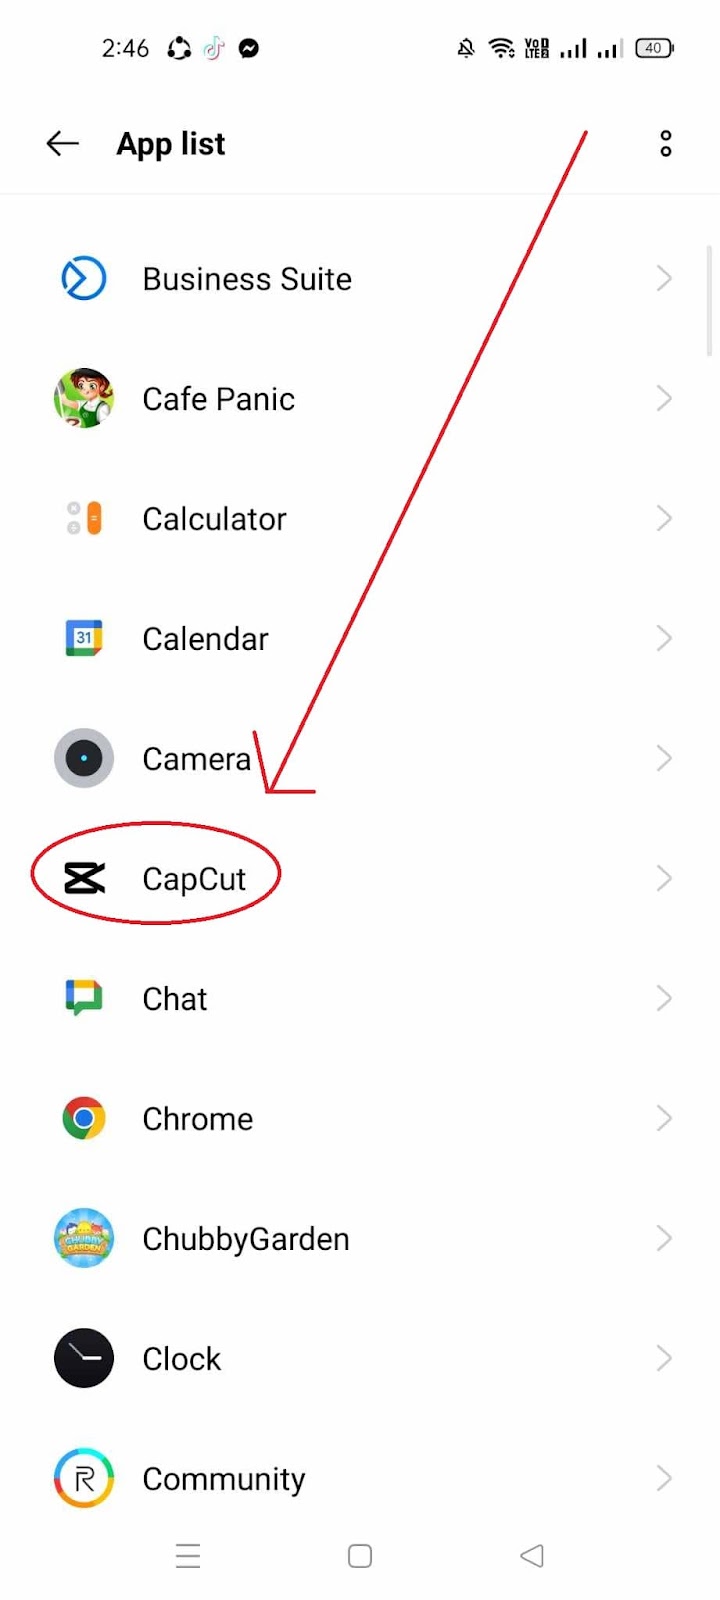 CapCut Export Issues How to Fix - Click CapCut